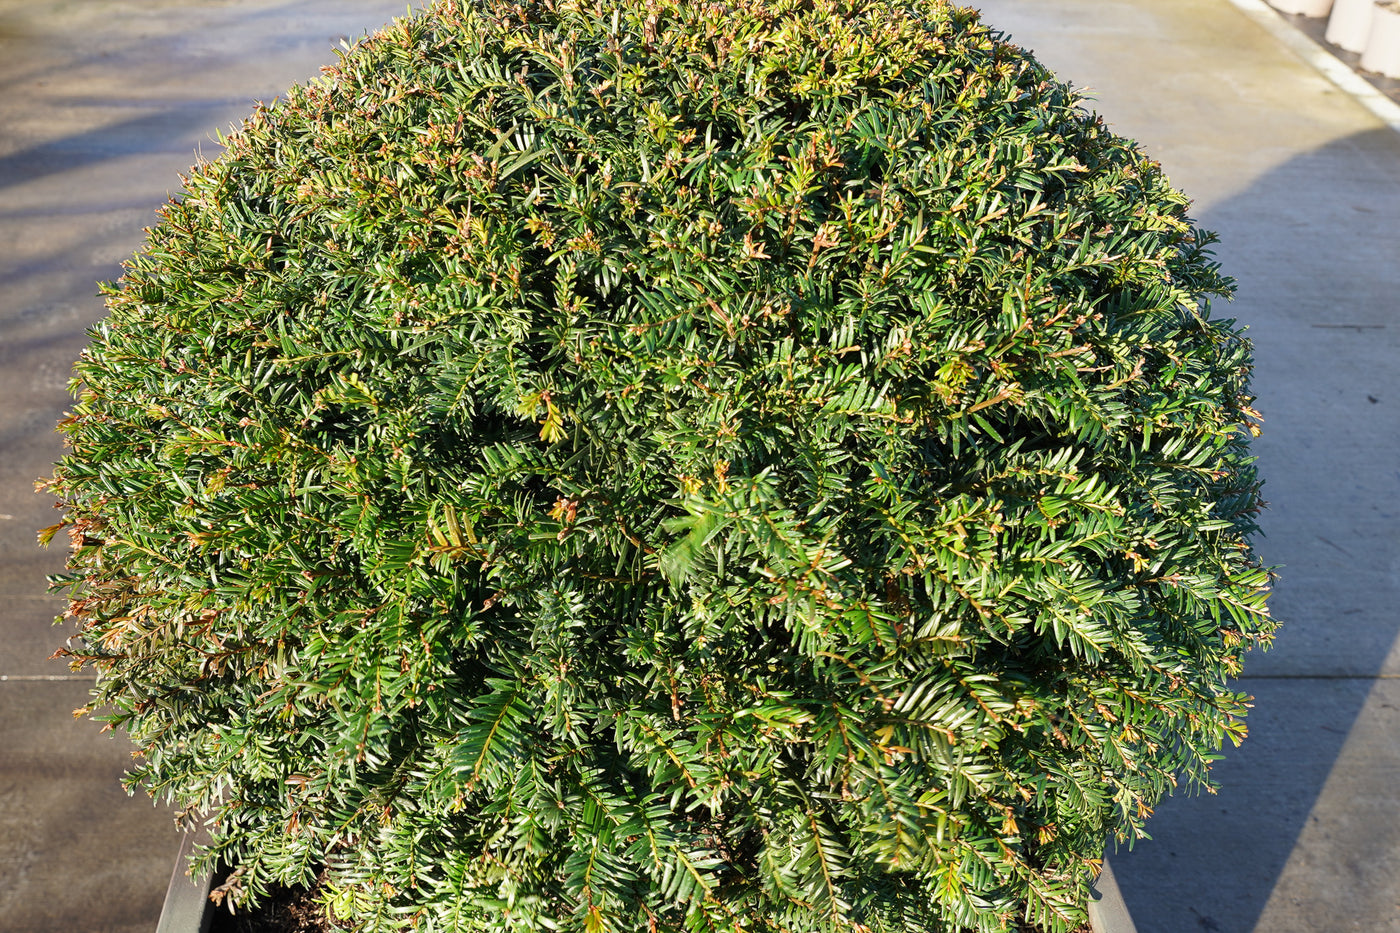 Taxus baccata - Irish yew